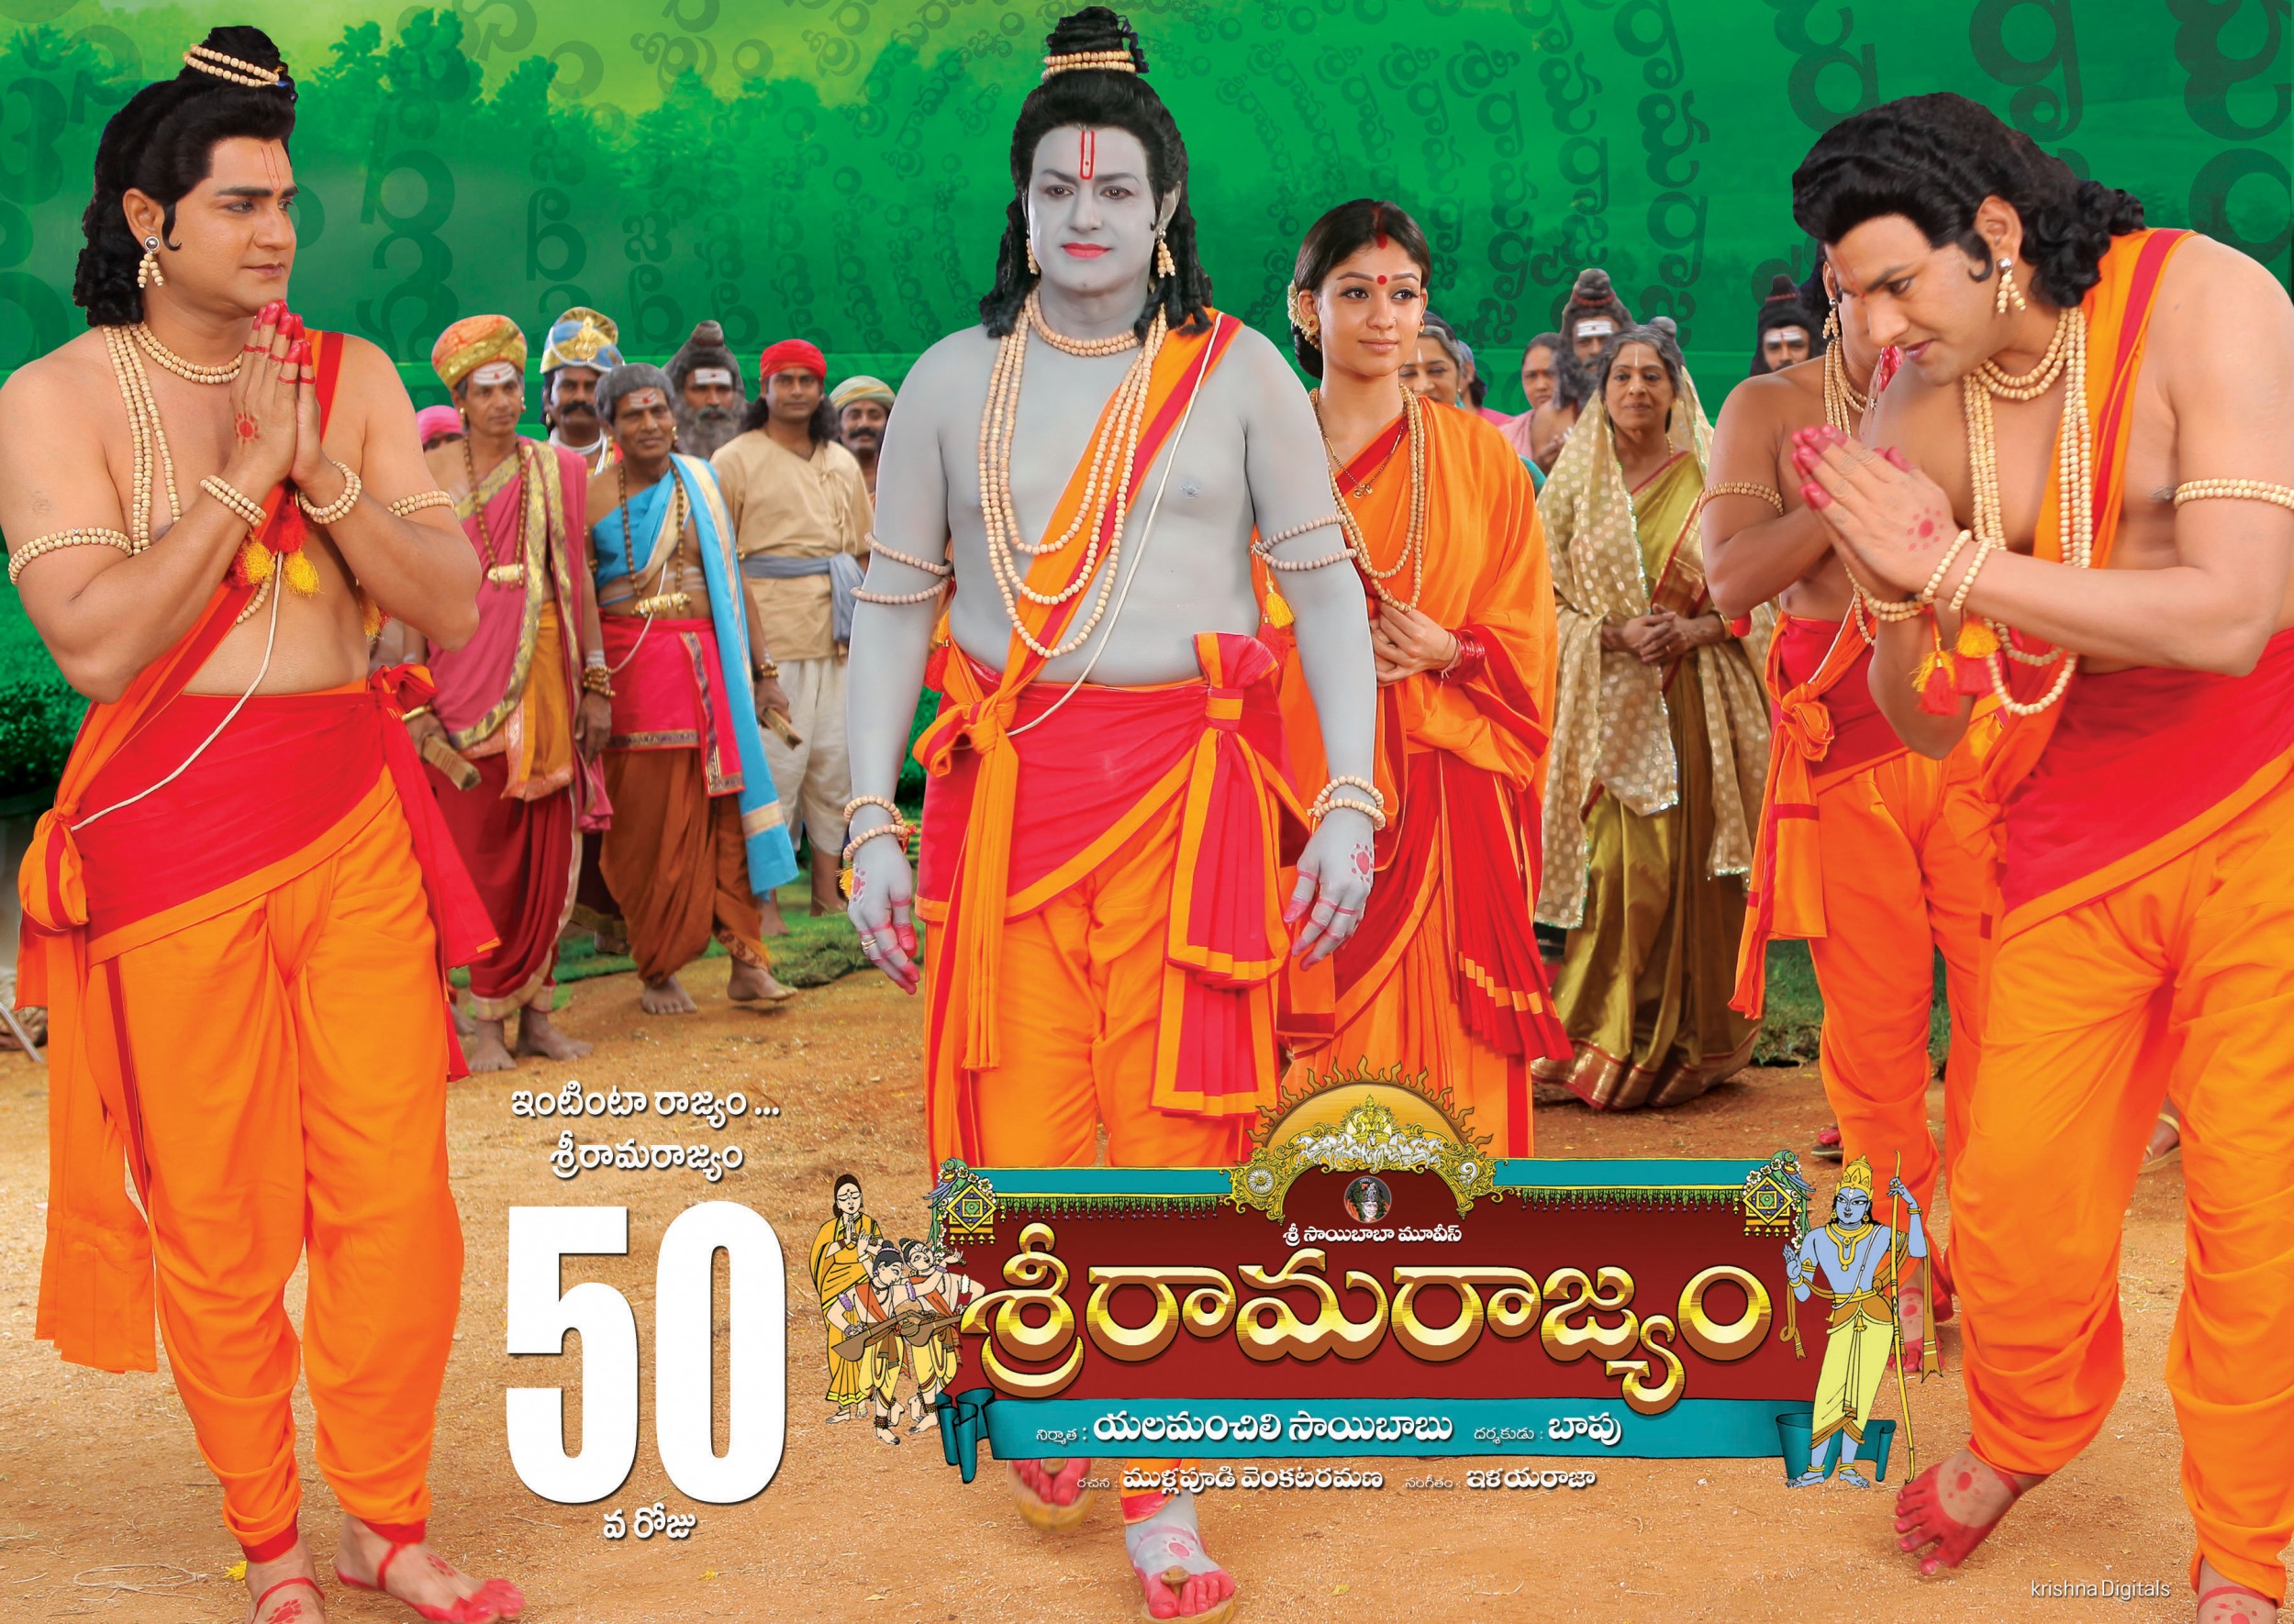 Mega Sized Movie Poster Image for Sri Rama Rajyam (#6 of 10)